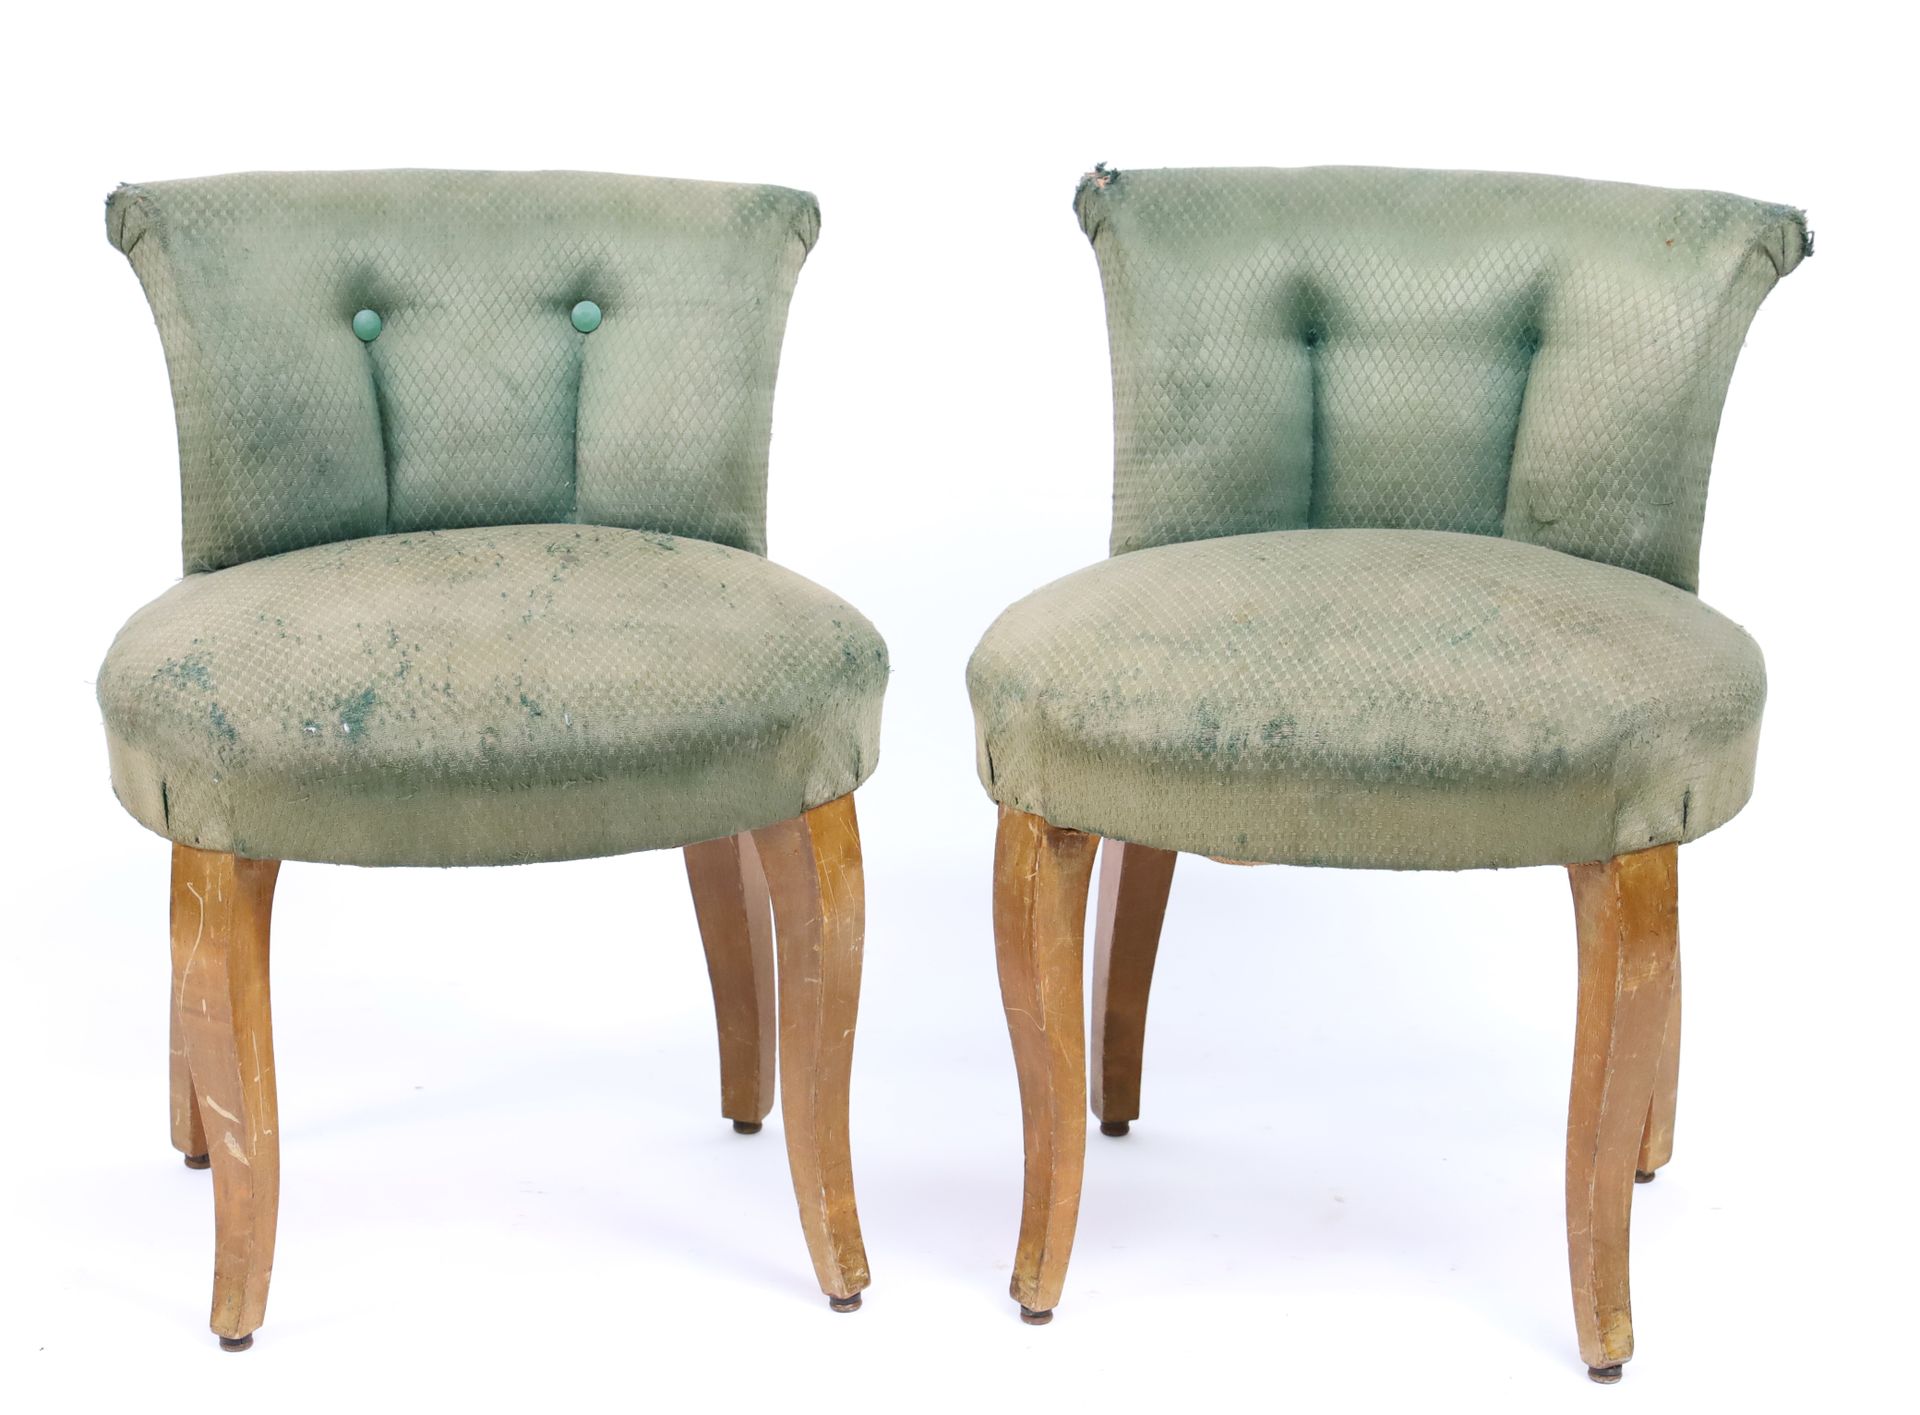 Null PAQUEBOT - 一对天然木制梳妆台椅，座椅和椅背为绿色天鹅绒 - 高60厘米，直径43厘米（磨损）。